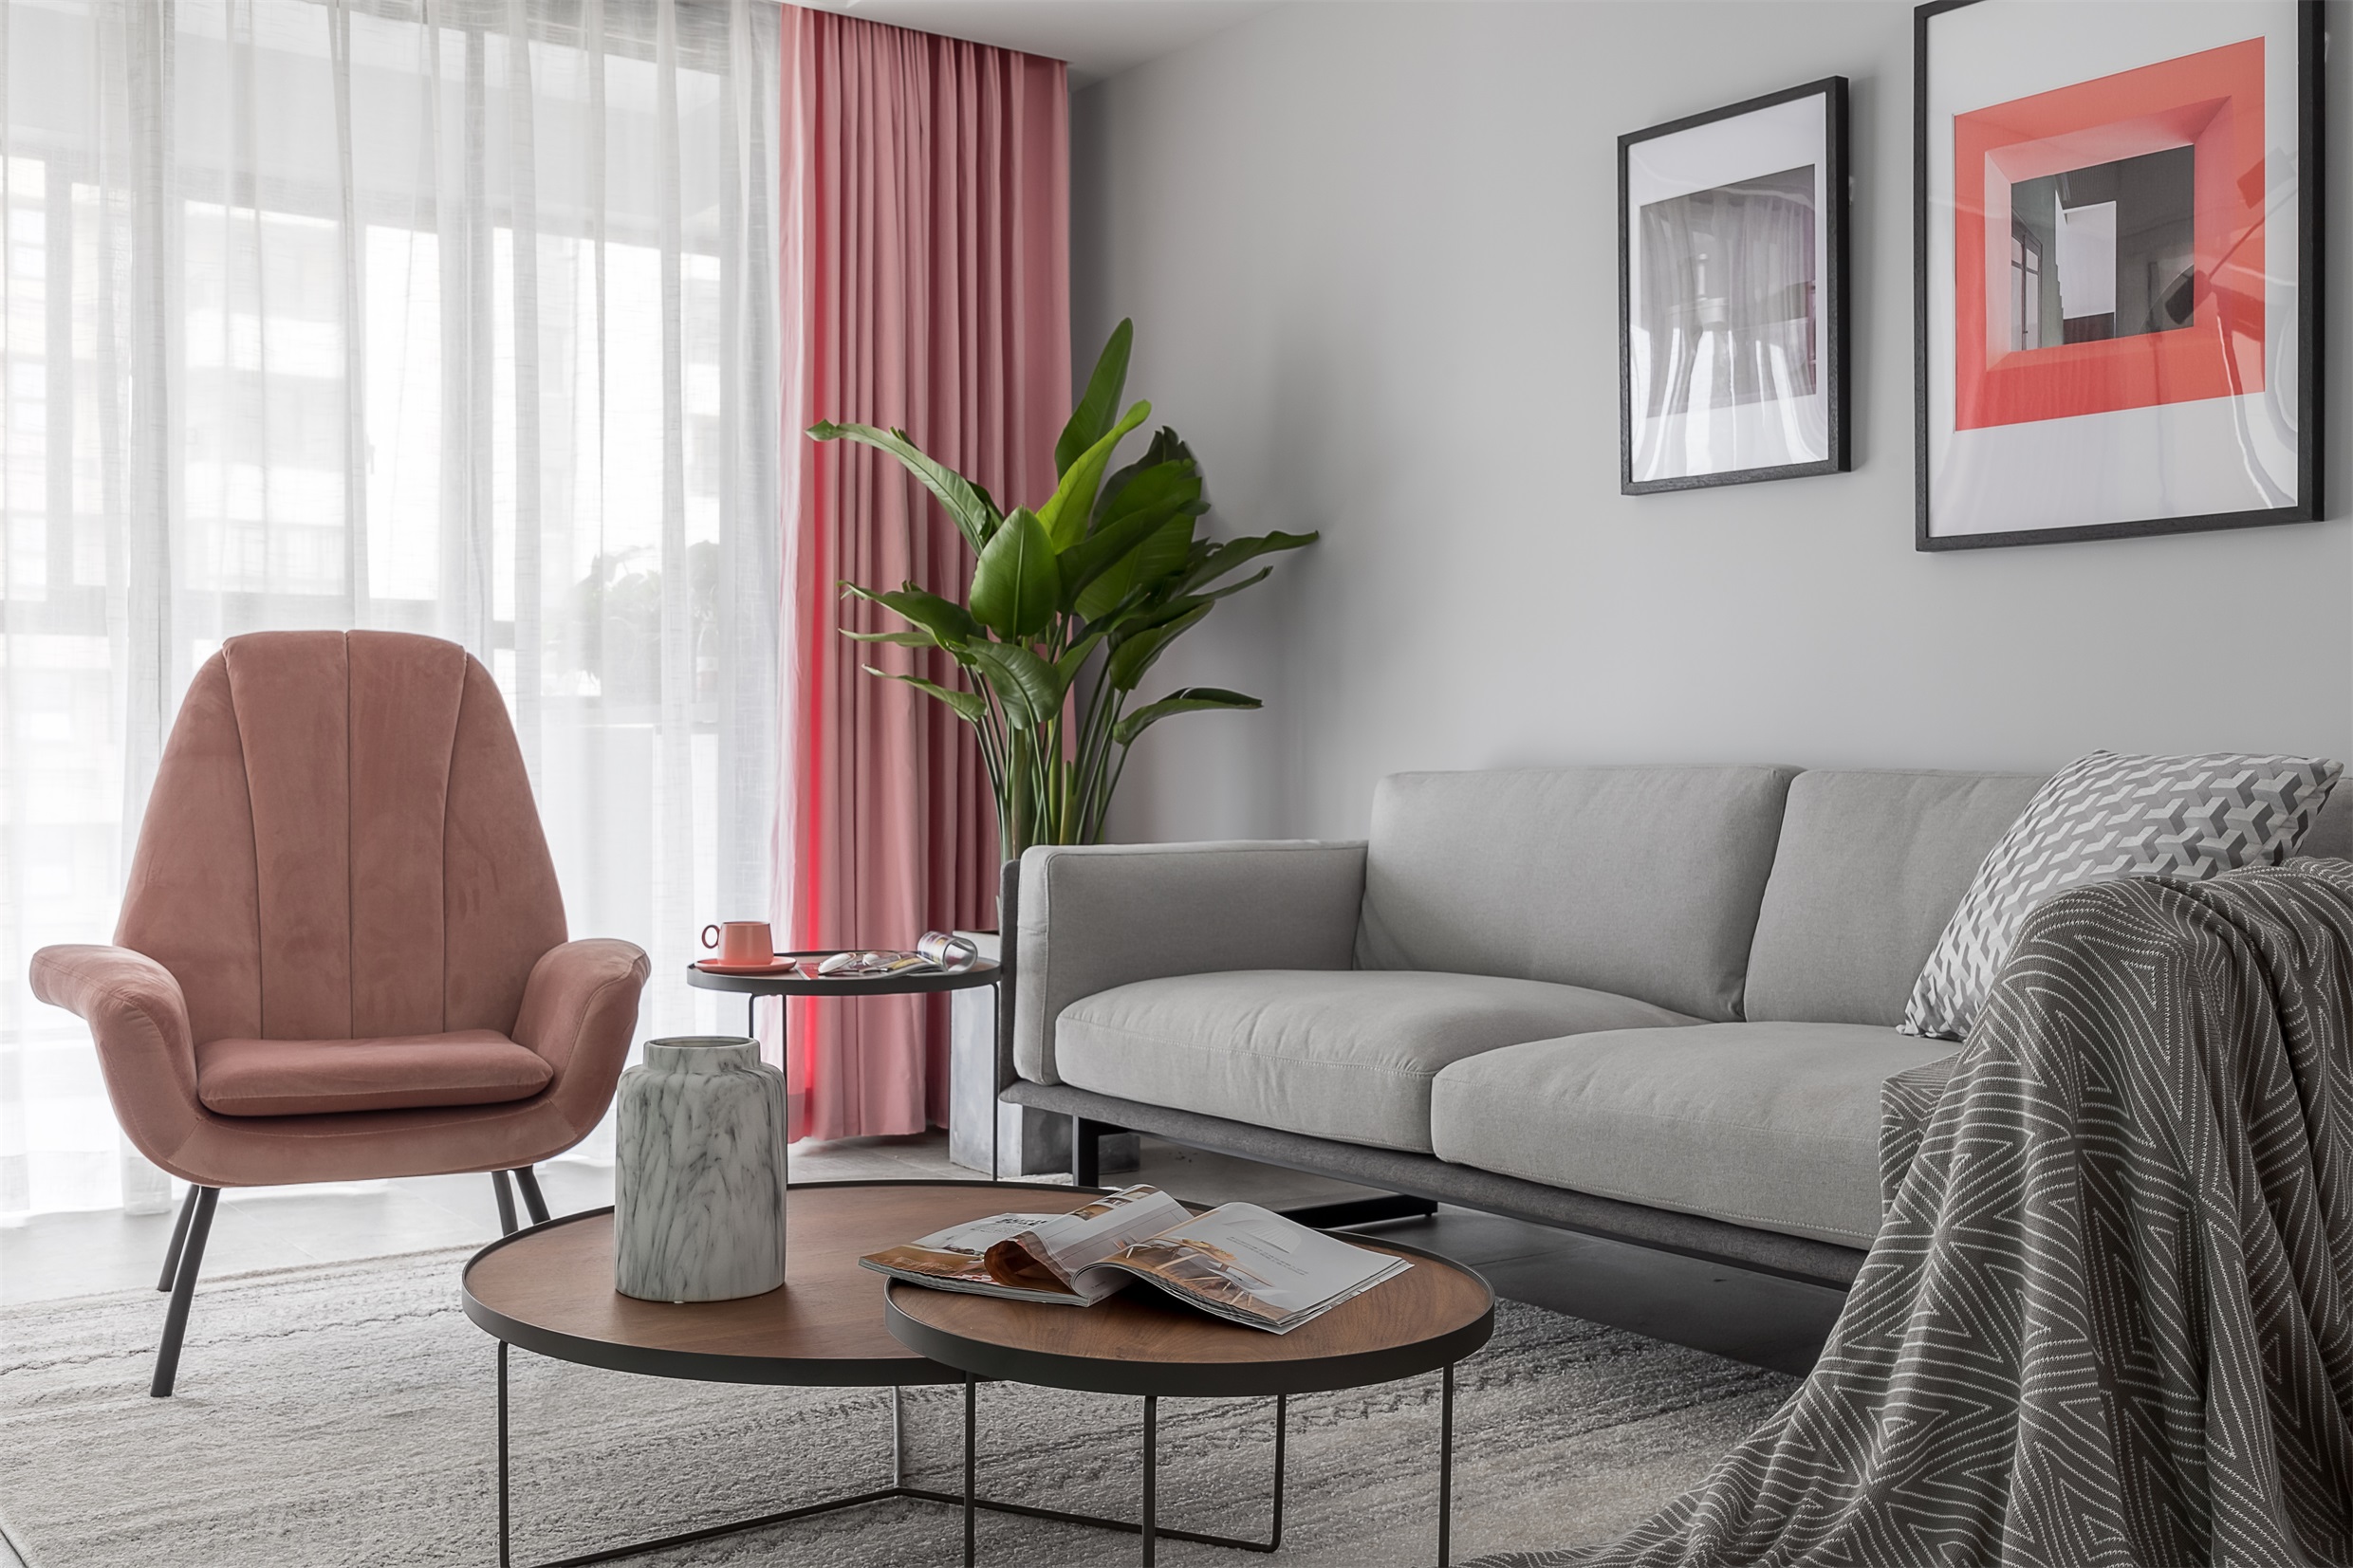 客厅灰色布艺沙发搭配粉色座椅,营造出自然写实的脉络和色彩,治愈氛围